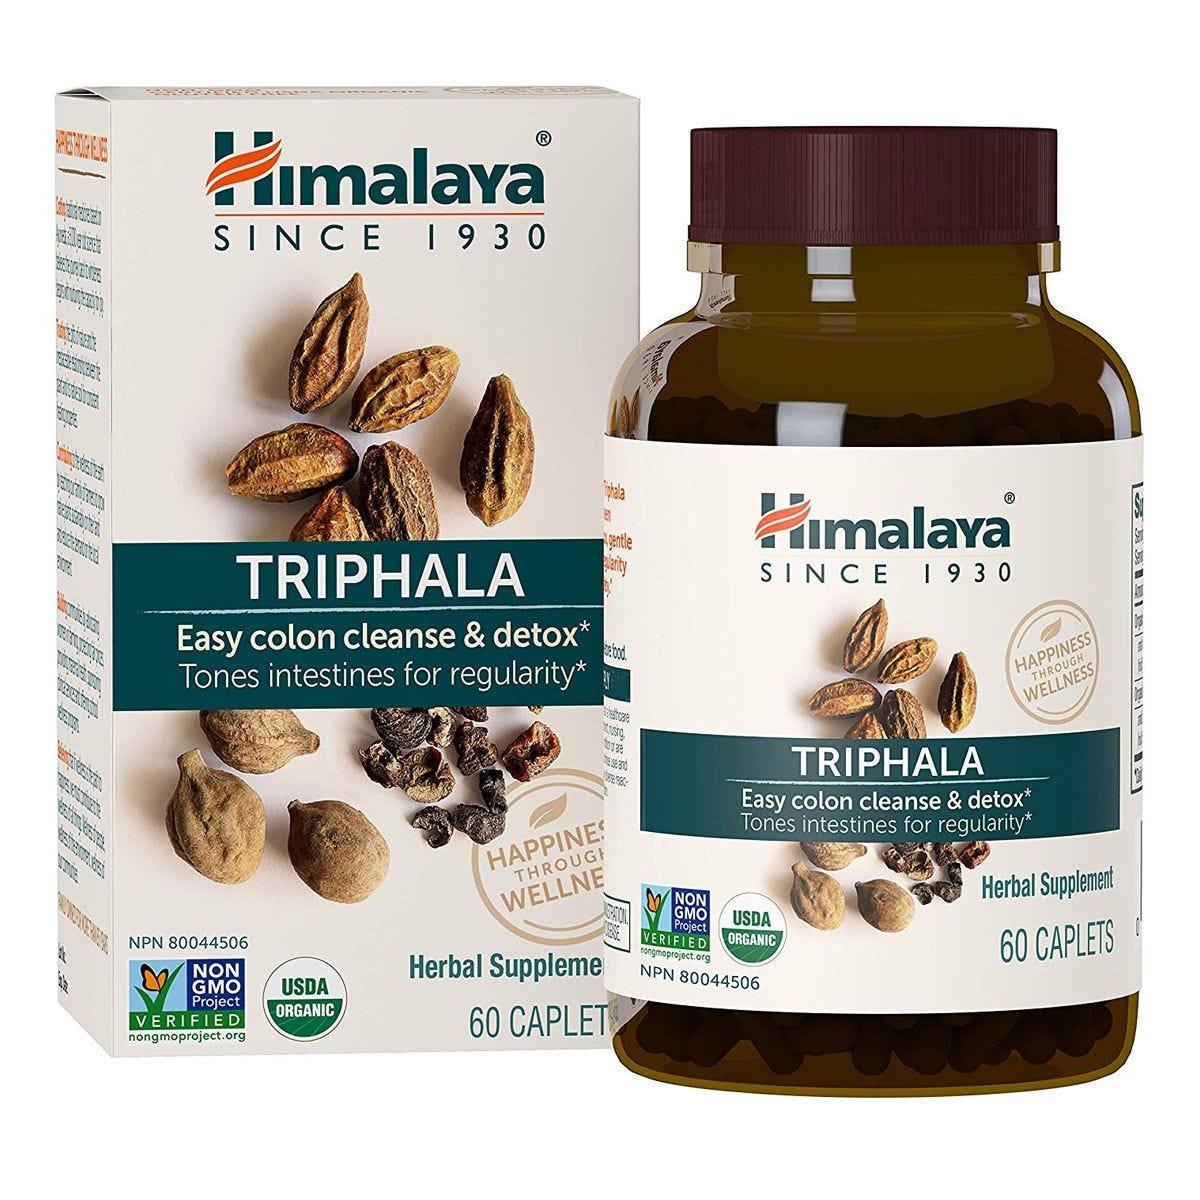 Himalaya Triphala 60 ct